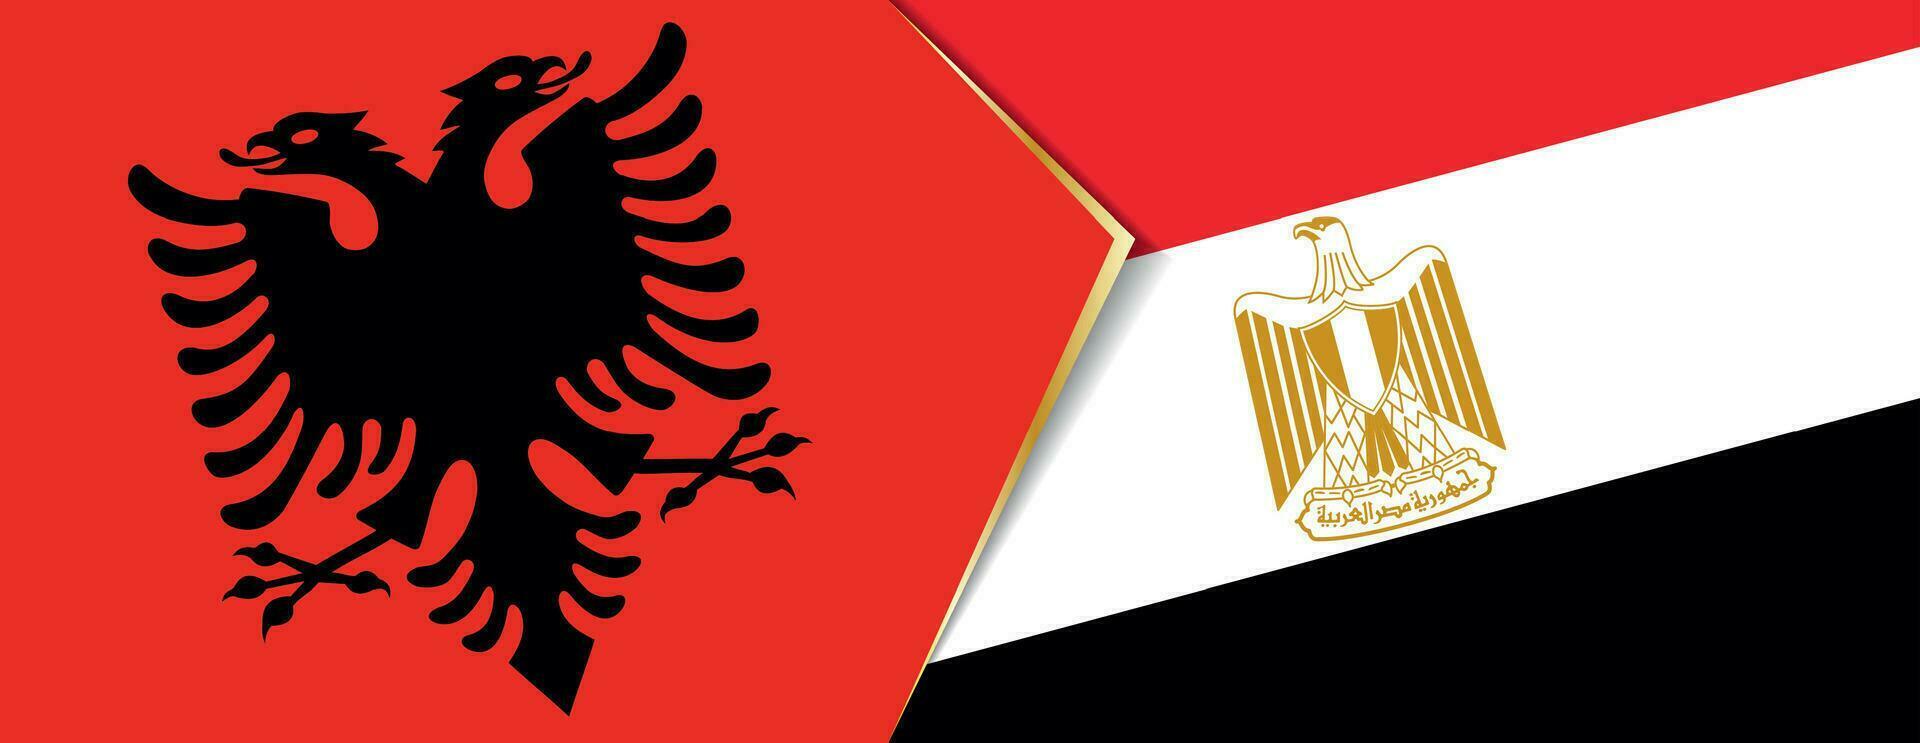 Albania y Egipto banderas, dos vector banderas